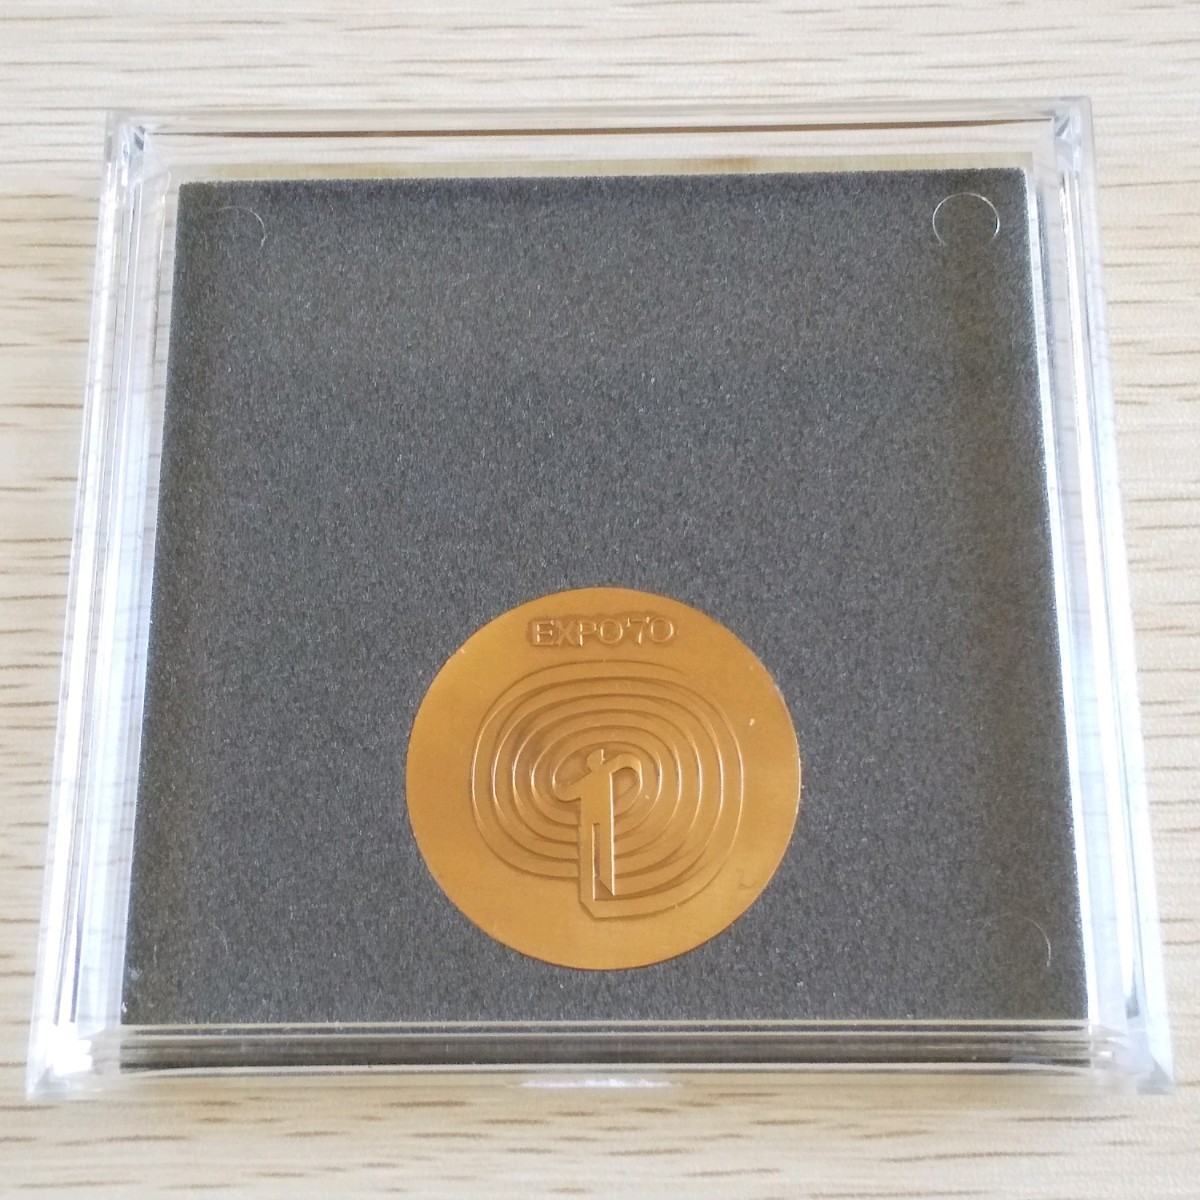 【送料無料】大阪万博(1970年のEXPO70)銅メダル1個